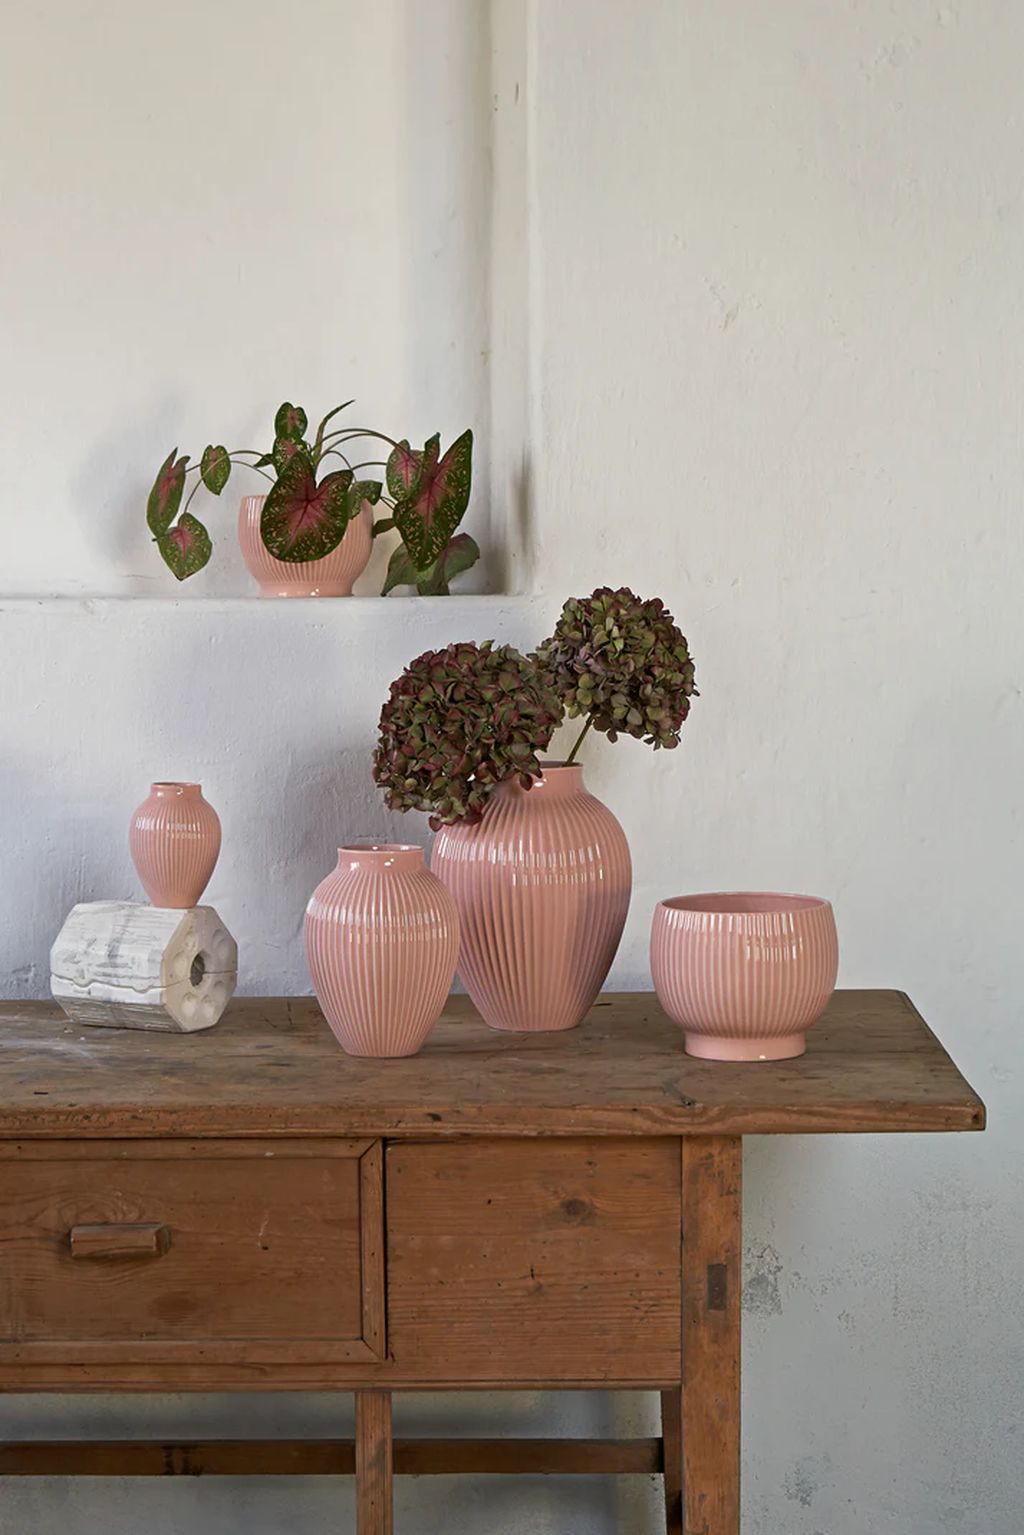 Knabstrup Keramik Blumentopf mit Rädern ø 16.5 Cm, Rosa